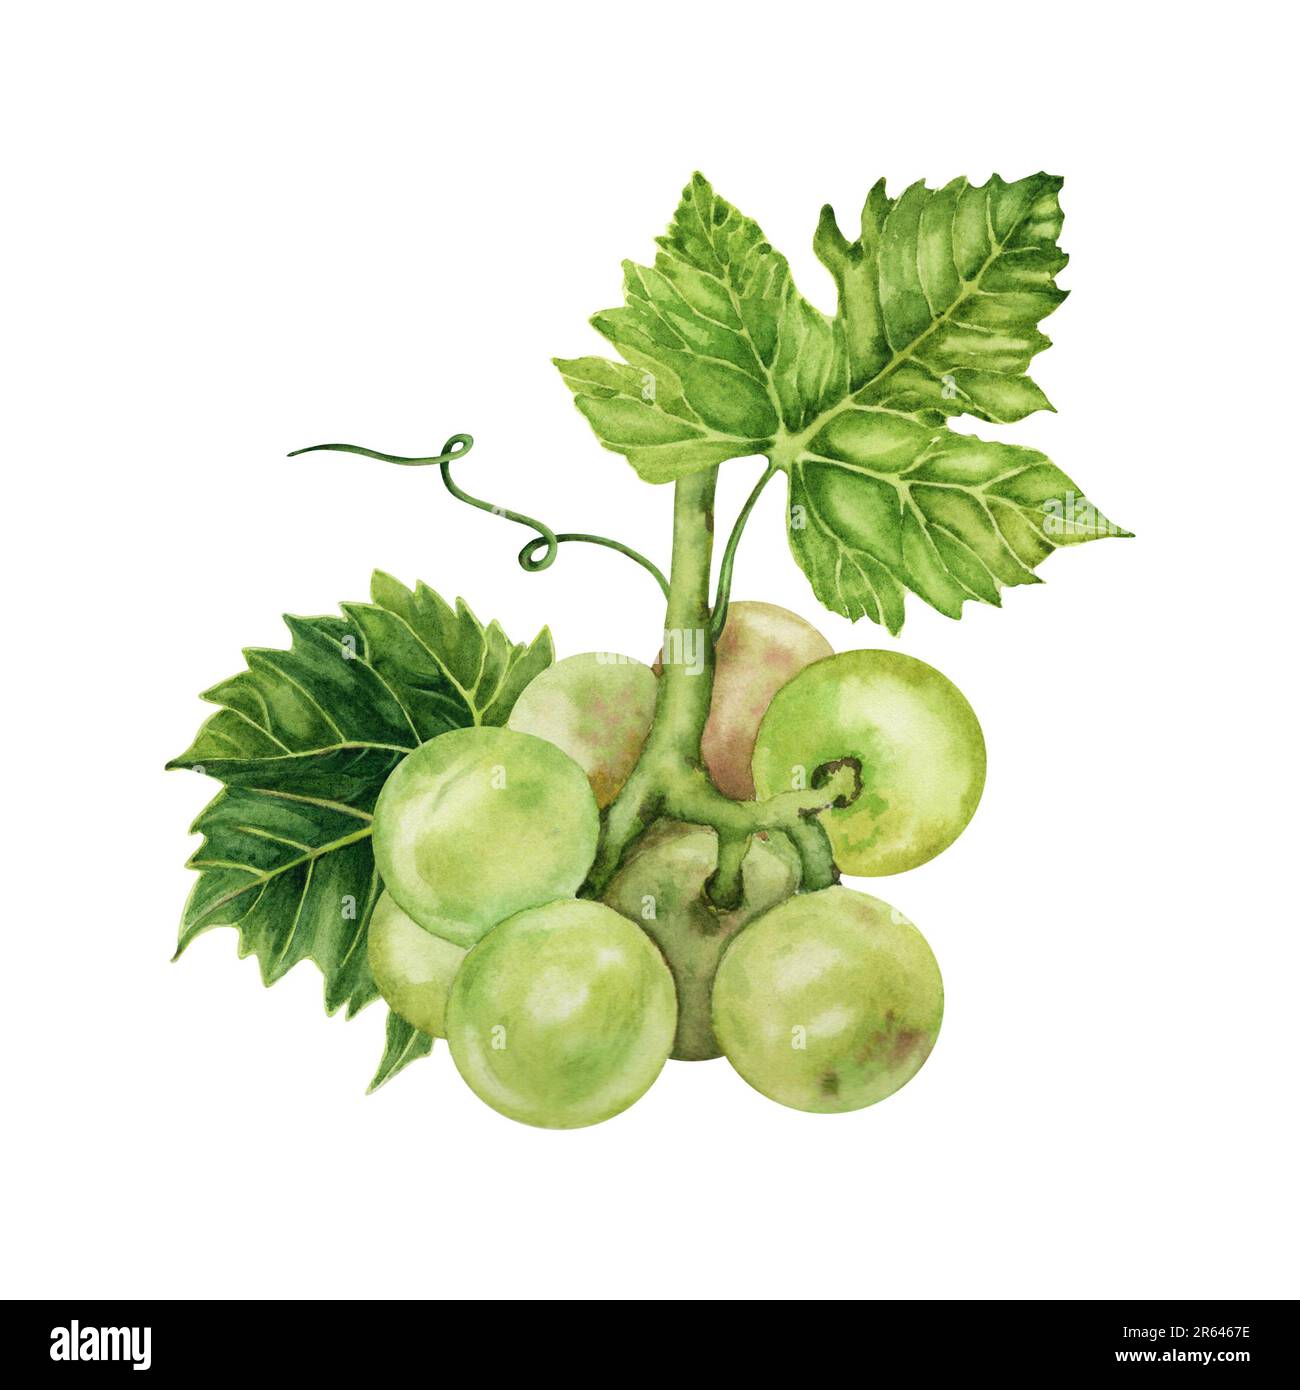 Bouquet de raisins verts avec une feuille de vigne verte. Illustration aquarelle dessinée à la main isolée sur fond blanc. Banque D'Images